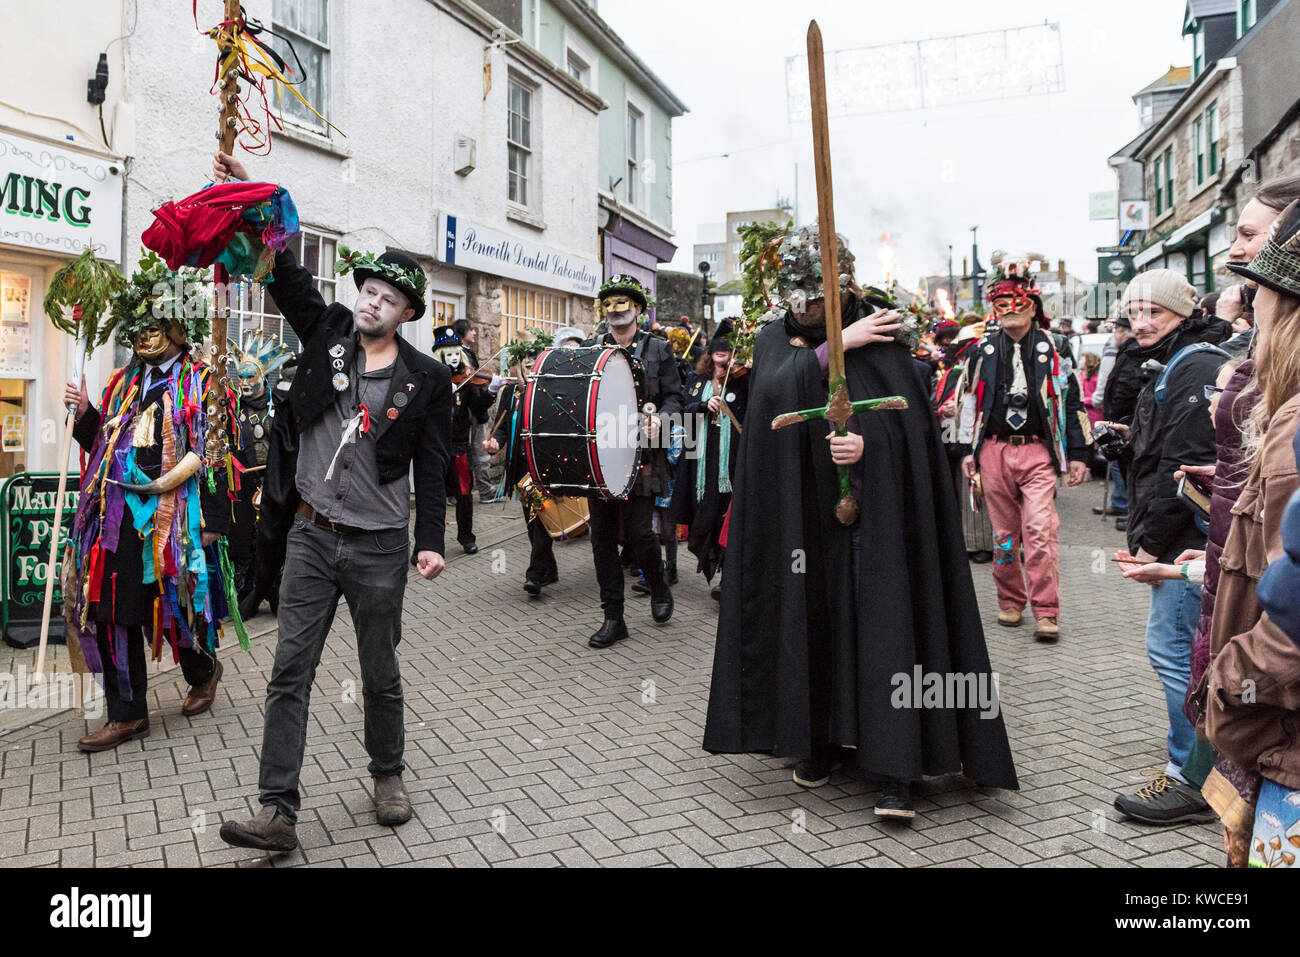 Le Festival Montol dans Penzance célébrant le solstice d'hiver. Banque D'Images